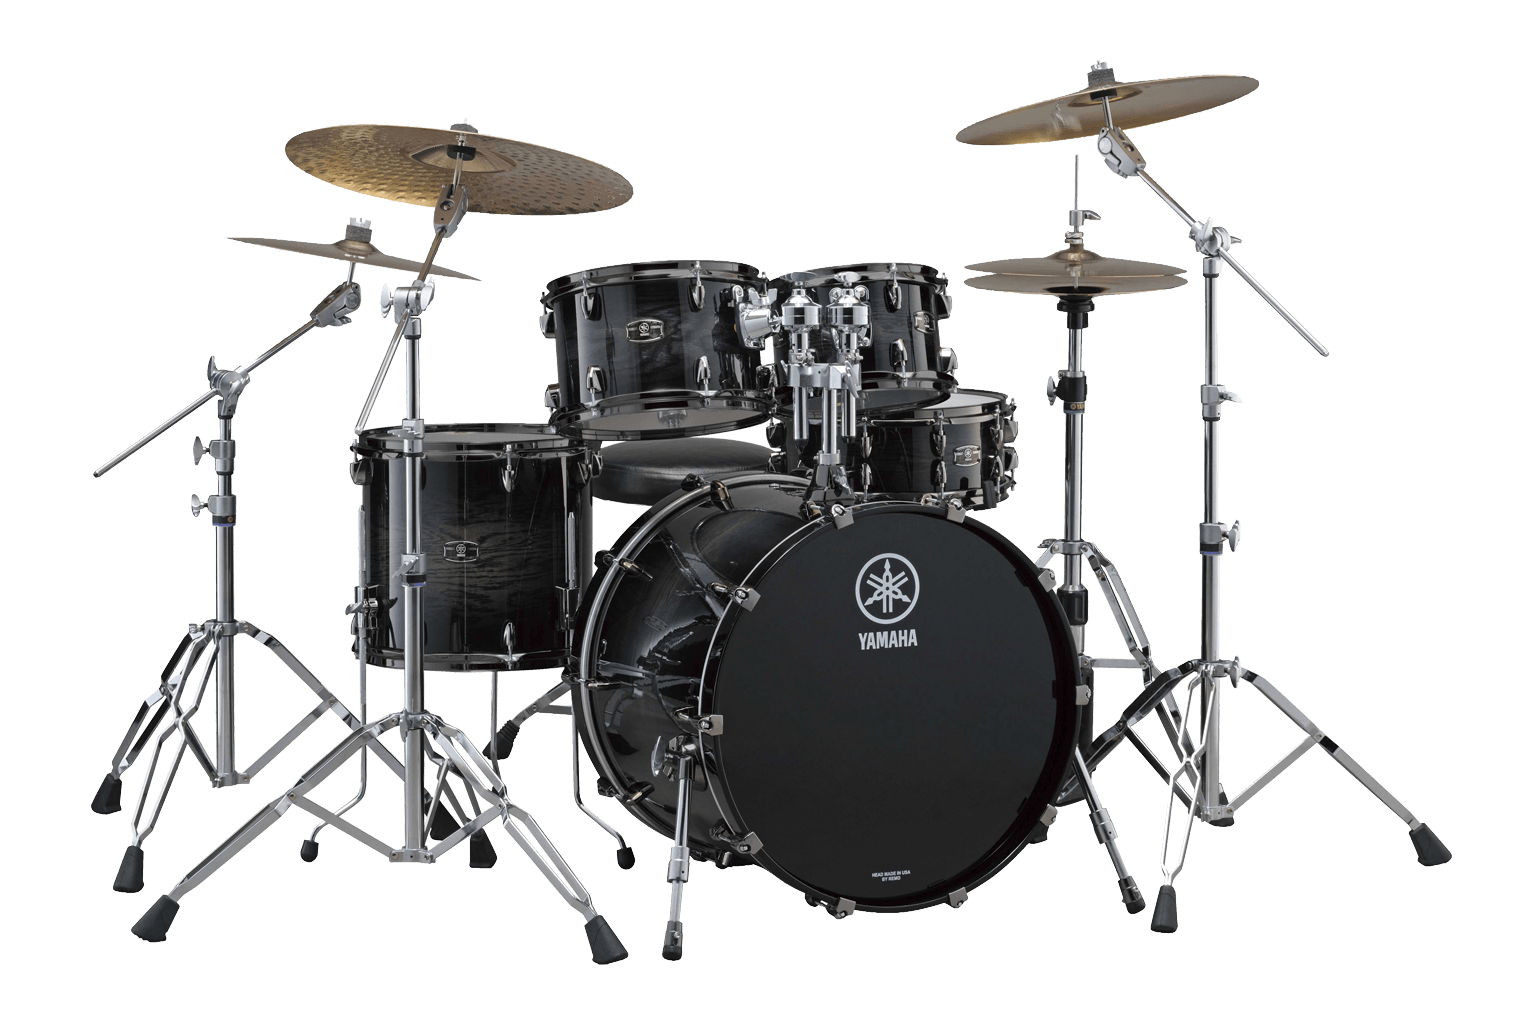 Black Drums Kit PNG Image in Transparent